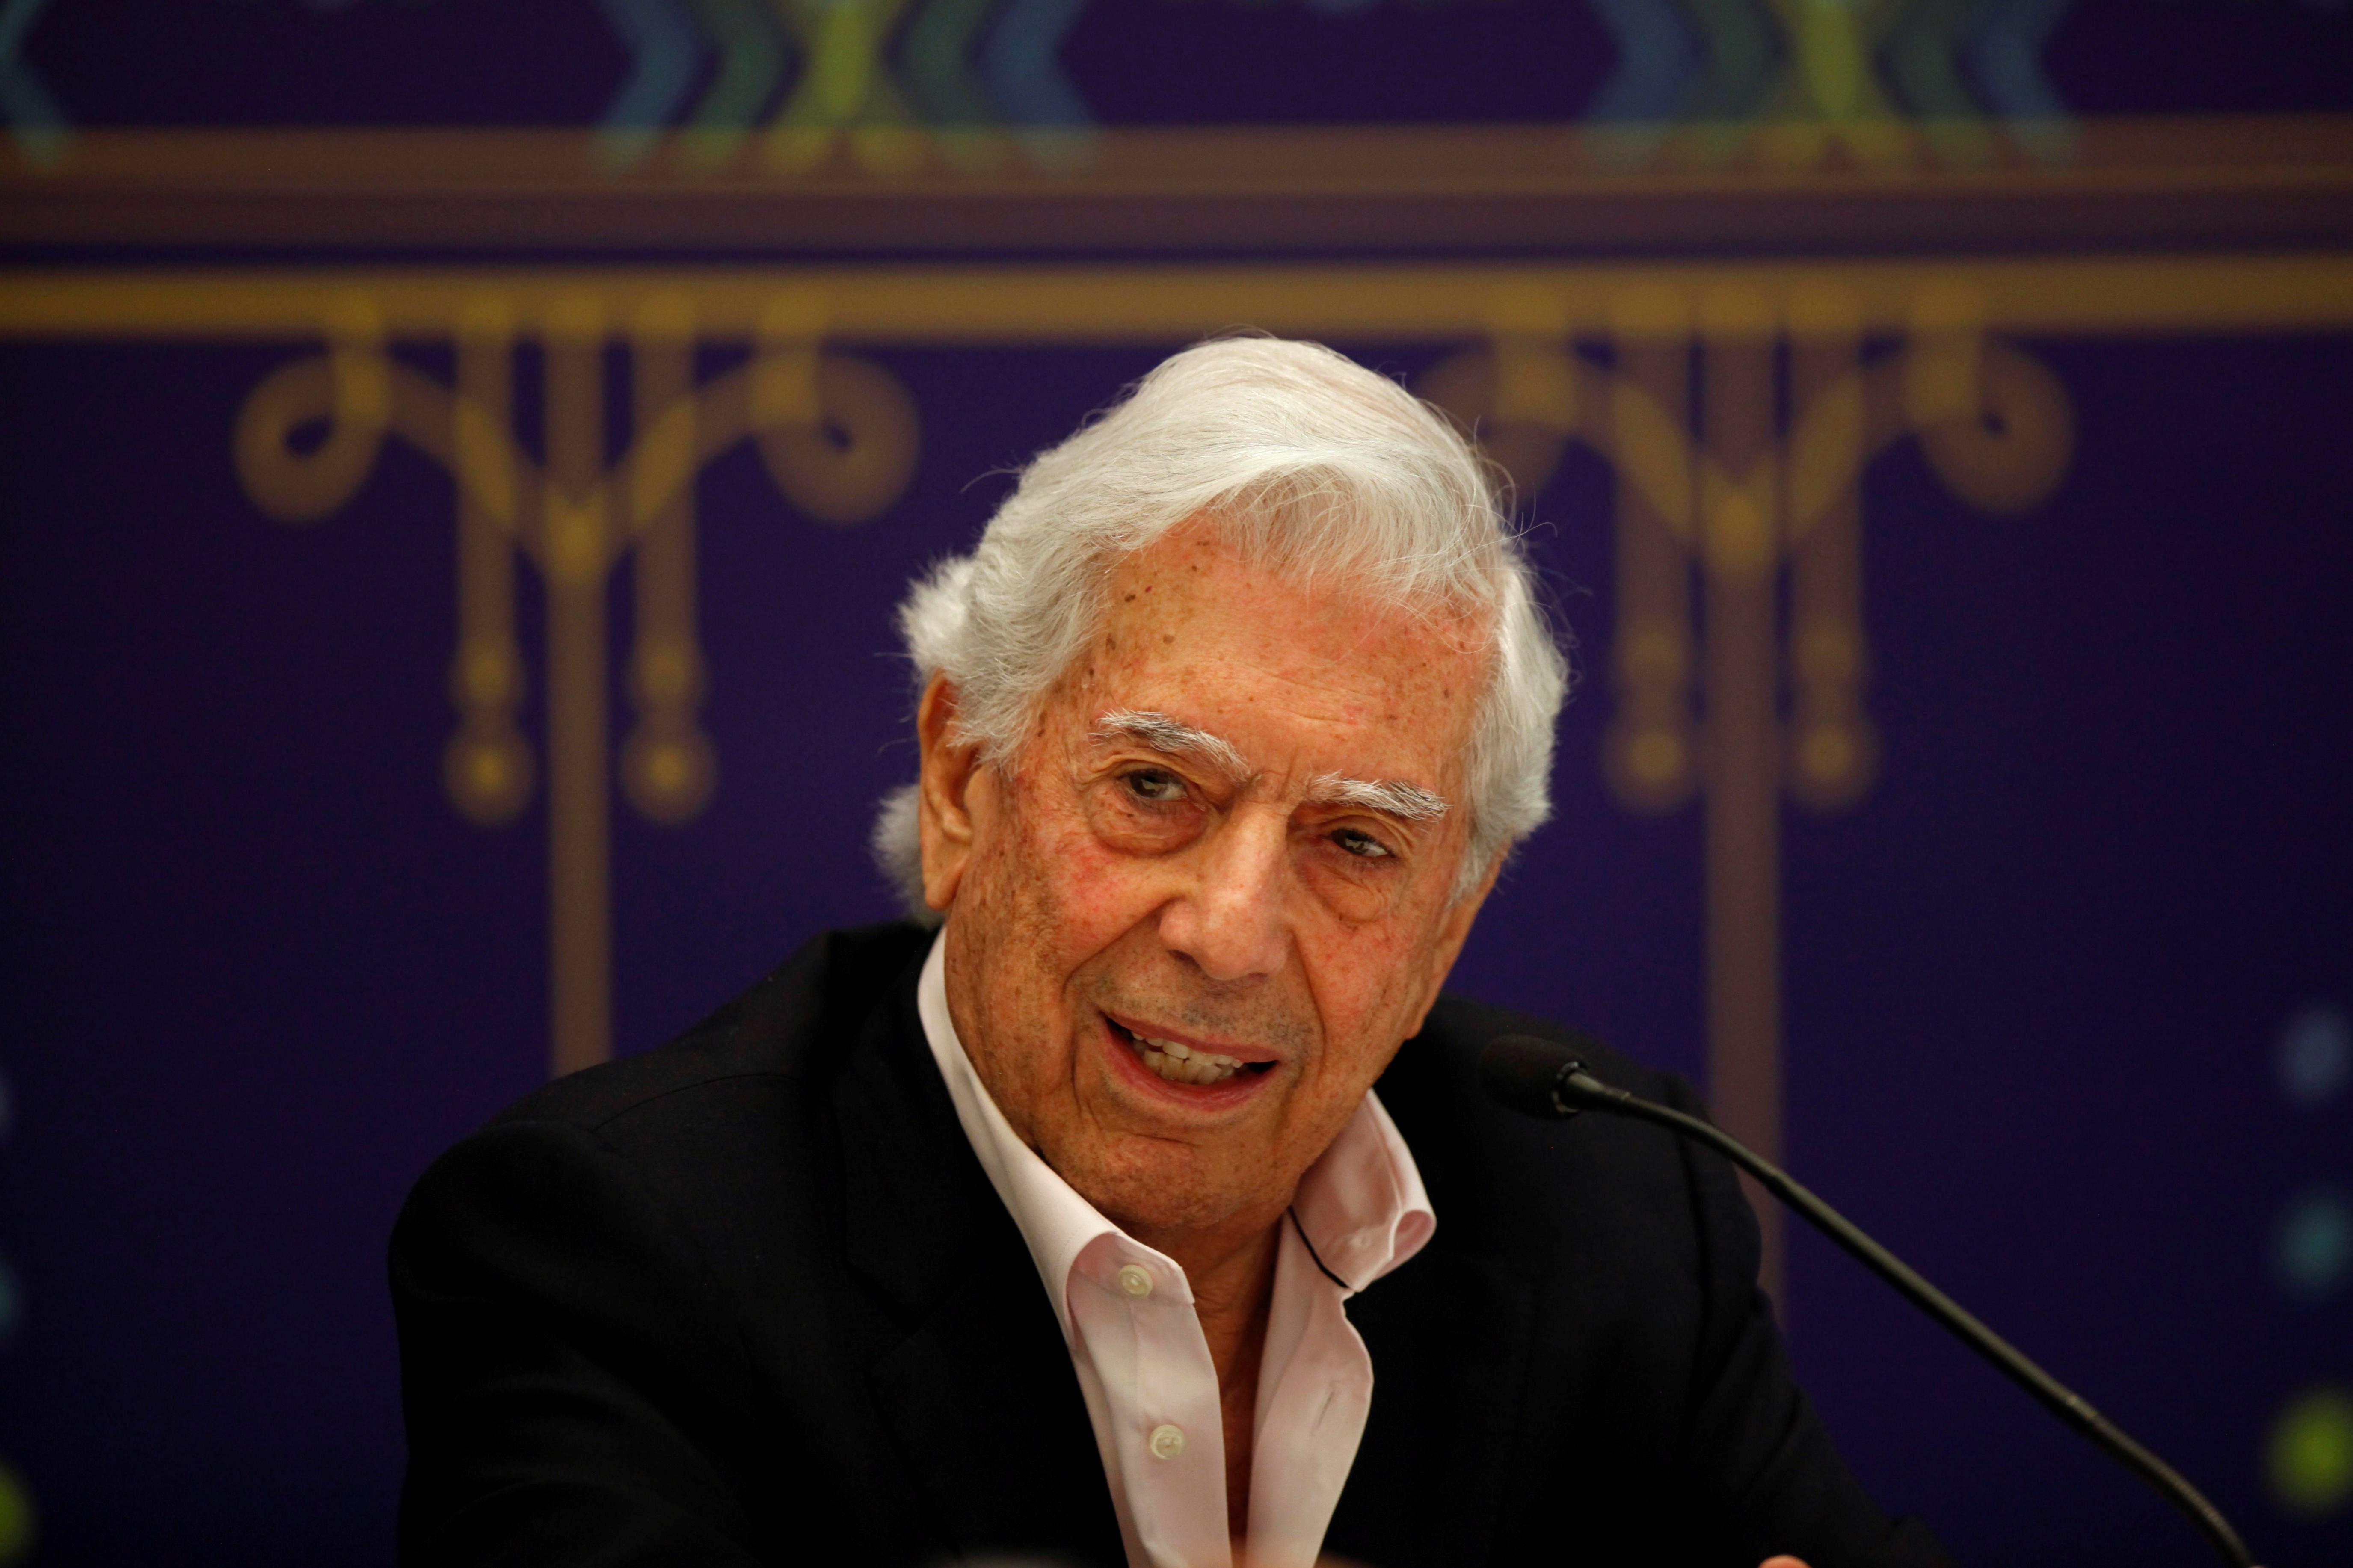 El escritor peruano Mario Vargas Llosa habla sobre su libro "Tiempos Recios" este domingo, durante una rueda de prensa en el marco de la 33 edición de la Feria Internacional del Libro de Guadalajara, en Jalisco (México). (Foto Prensa Libre: EFE)